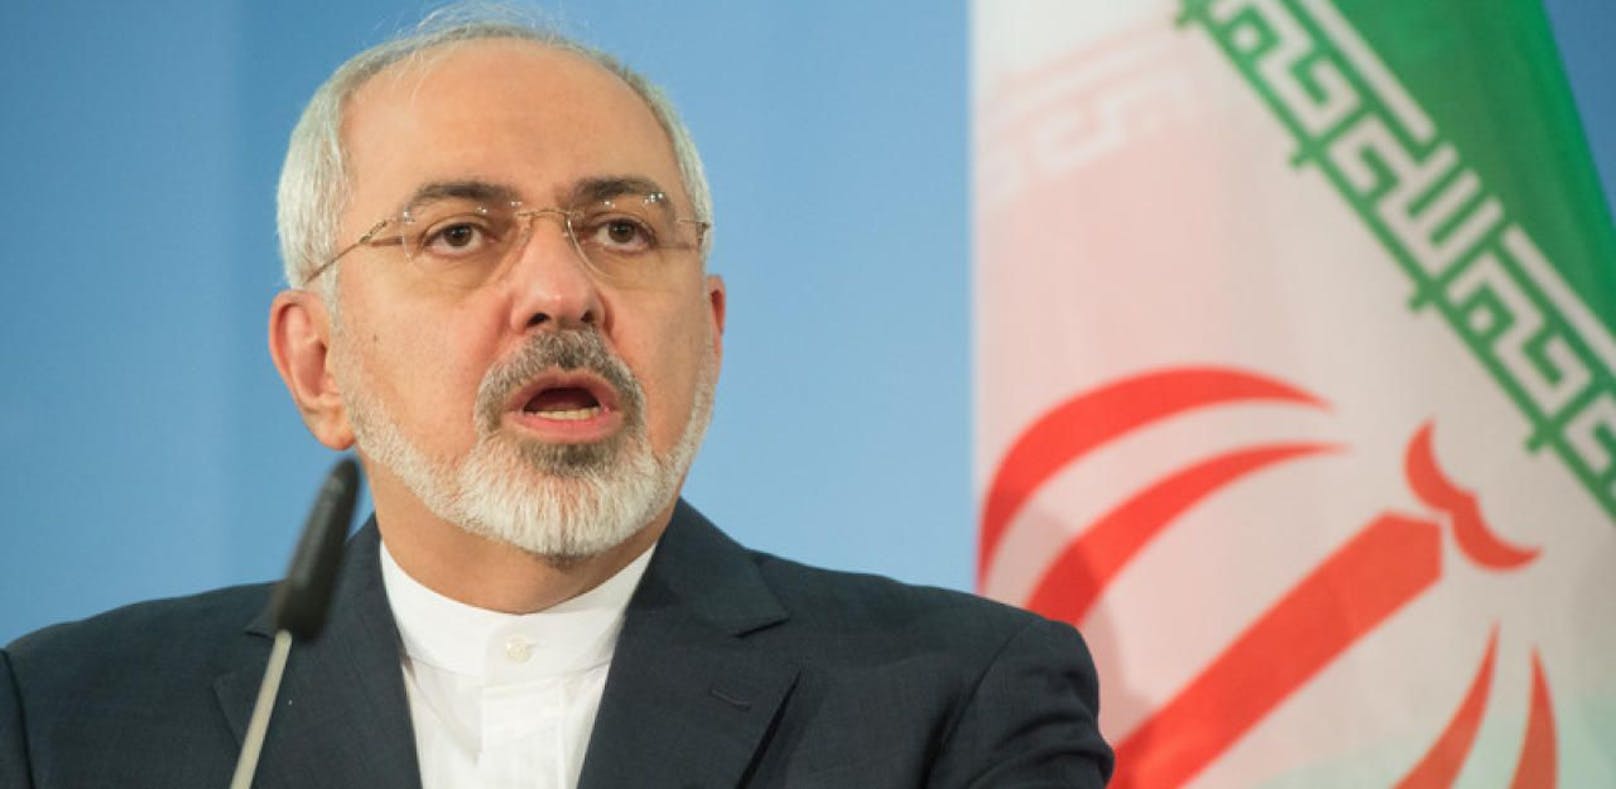 Iran warnt vor "umfassendem Krieg"